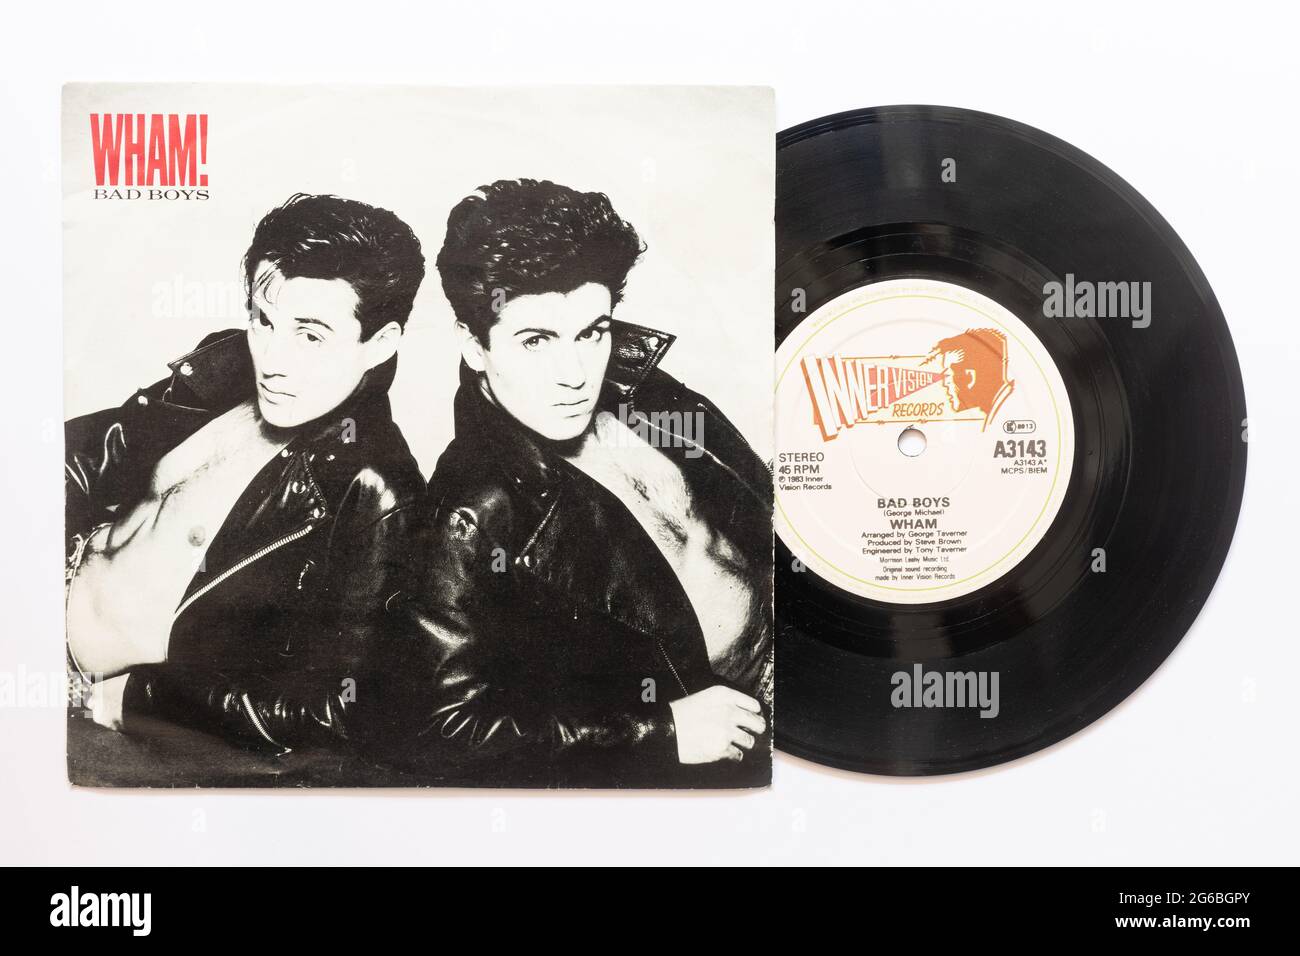 Bad Boys par le duo pop Wham, une photo de la 7' single vinyle 45 tr/min record dans la pochette photo Banque D'Images